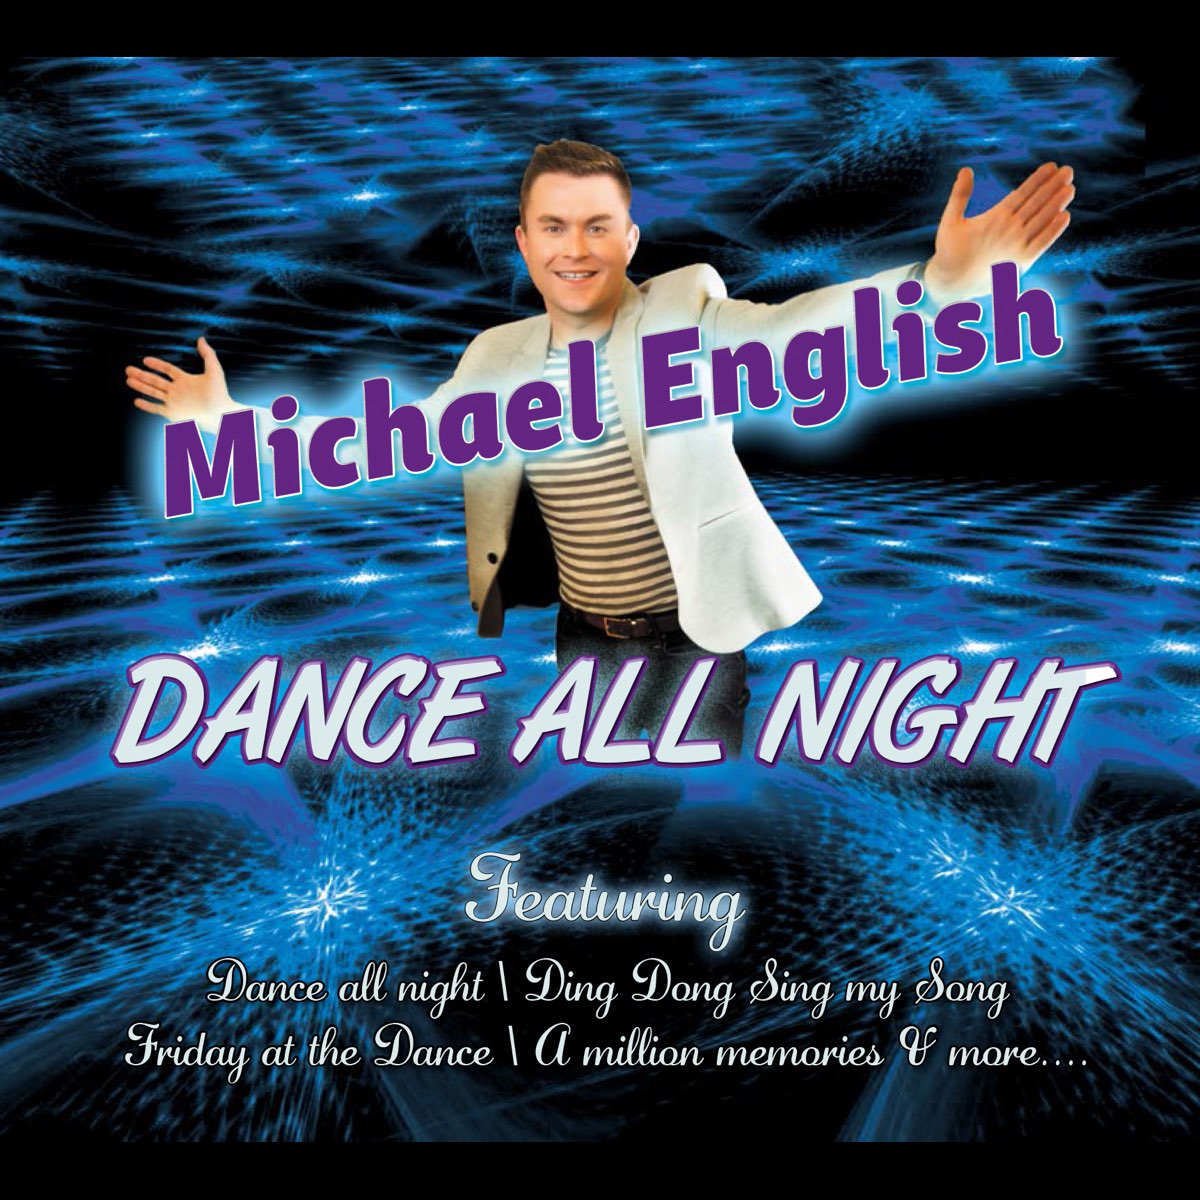 Dance dance песня на английском. Михаэль на английском. Dance all Night фото.